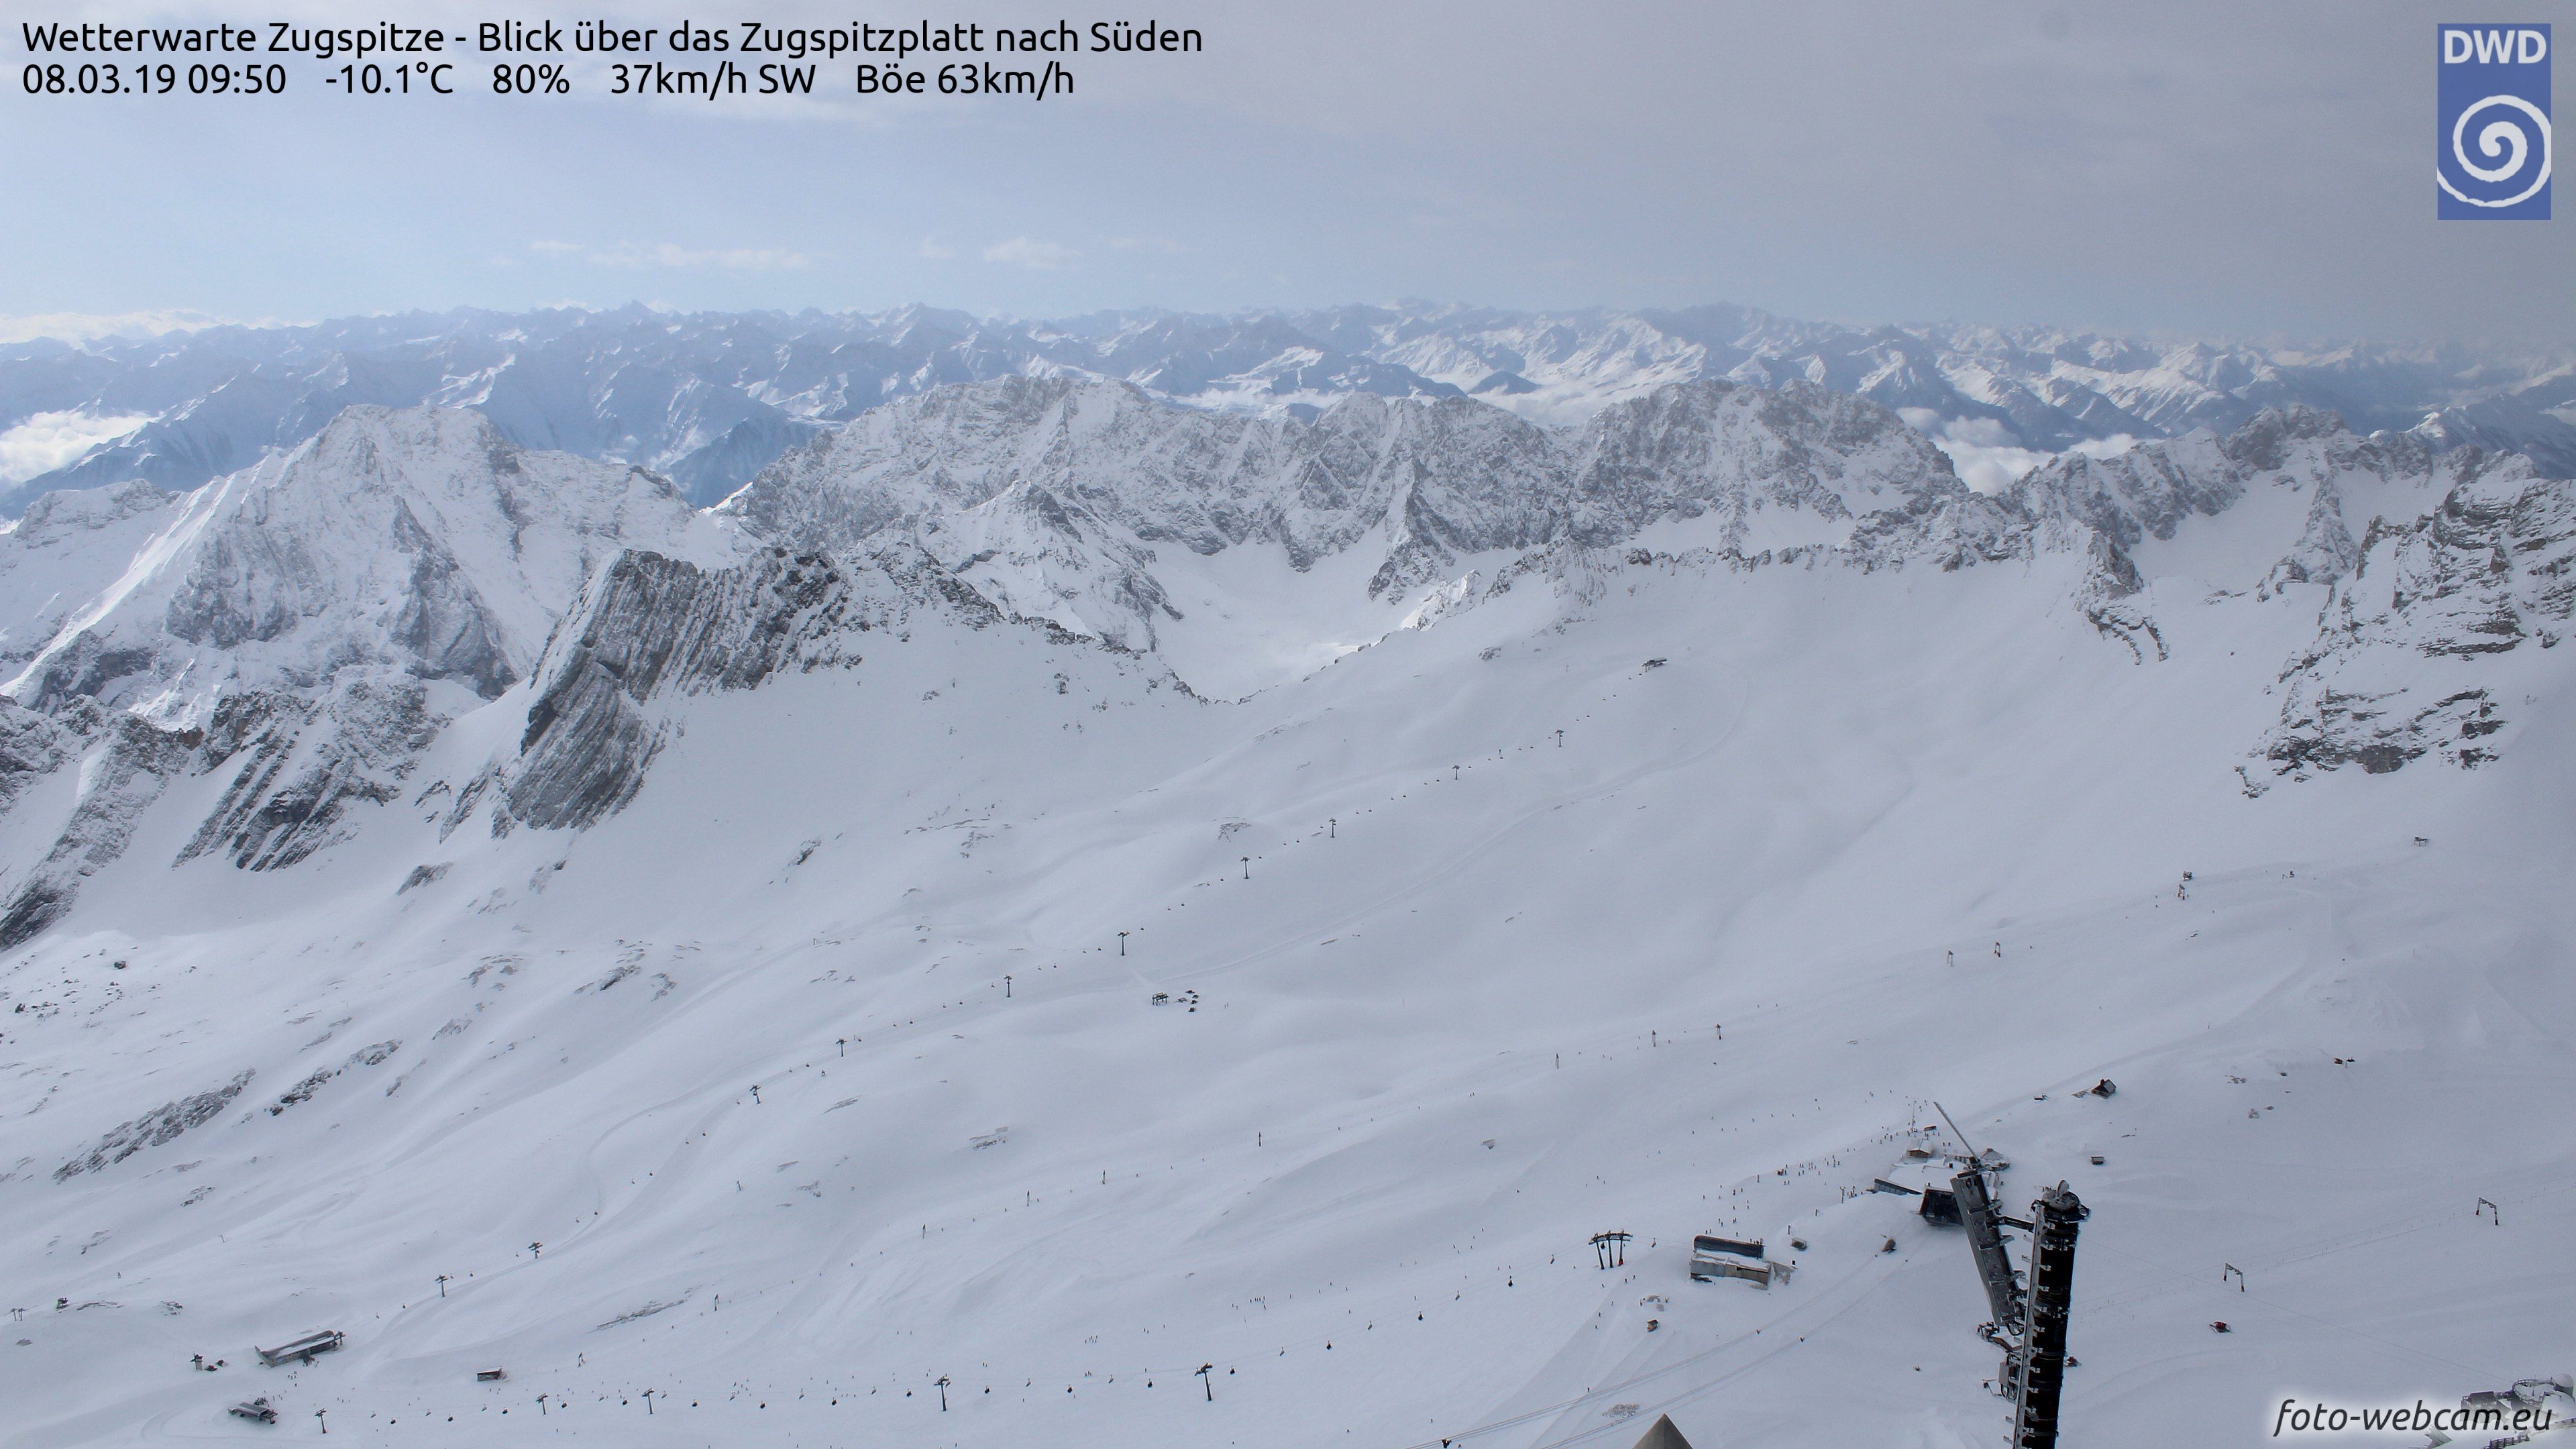 Terwijl het op de Zugspitze weer even bewolkt is, zie je op de achtergrond brede opklaringen